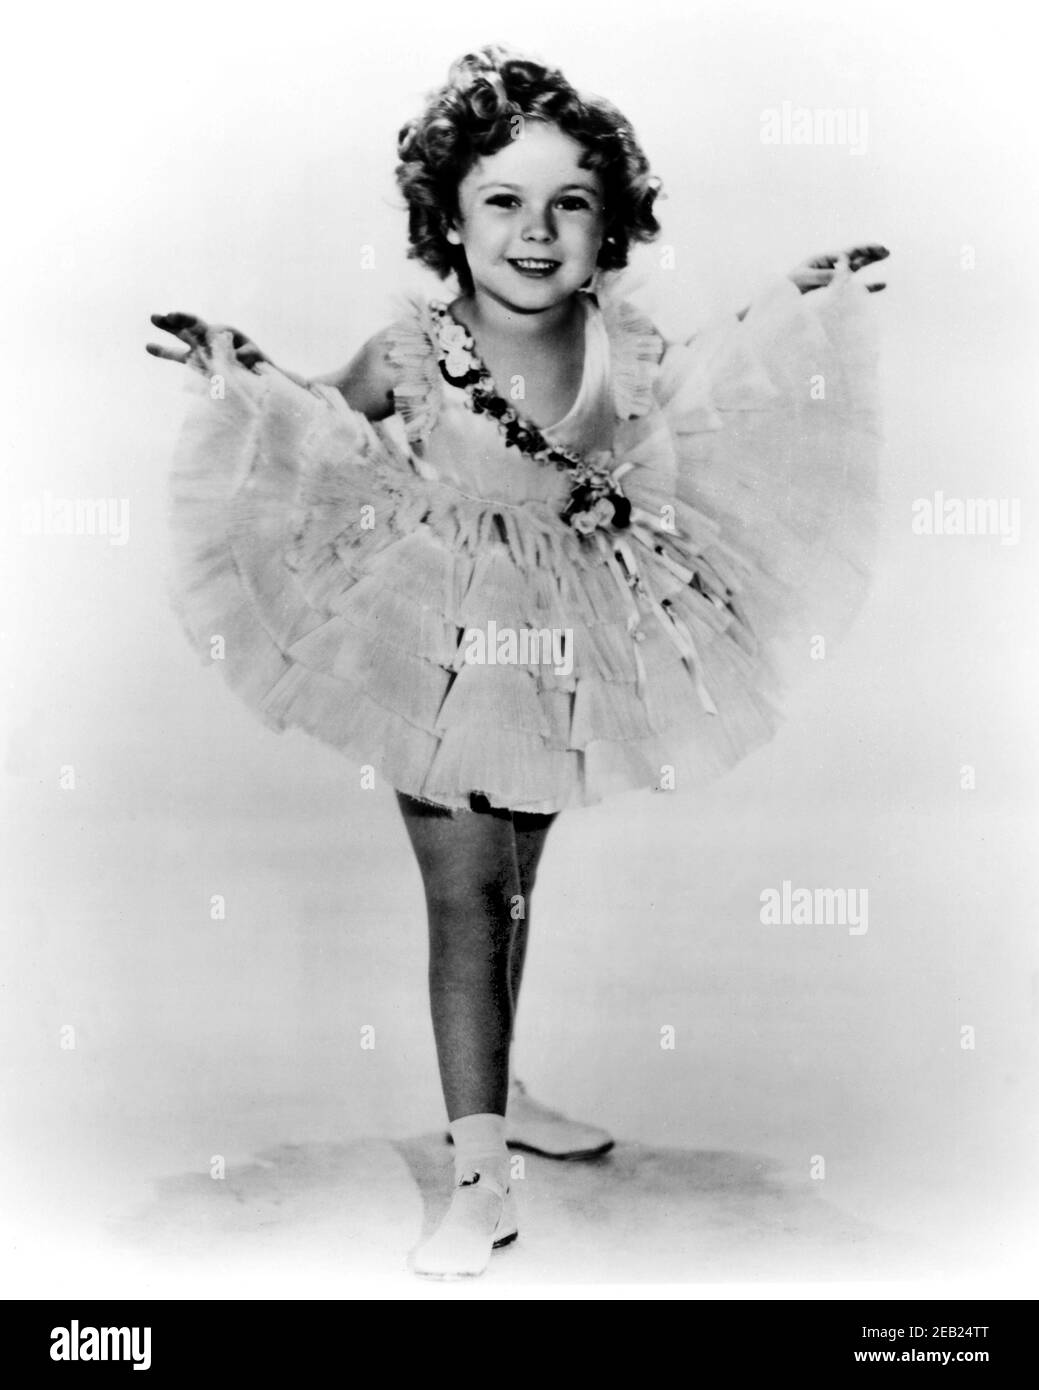 1934 ca., Stati Uniti d'America : L'attrice del bambino SHIRLEY TEMPLE ( 1928 - 2014 ) , Fox movie publicity still - FILM - CINEMA - ritratto - ritratto - boccoli - riccioli - ricci - bambino prodigo - DANZA - BALLETTO - DANZA - scarpe alla bebè - tutù - balletto ---- Archivio GBB Foto Stock